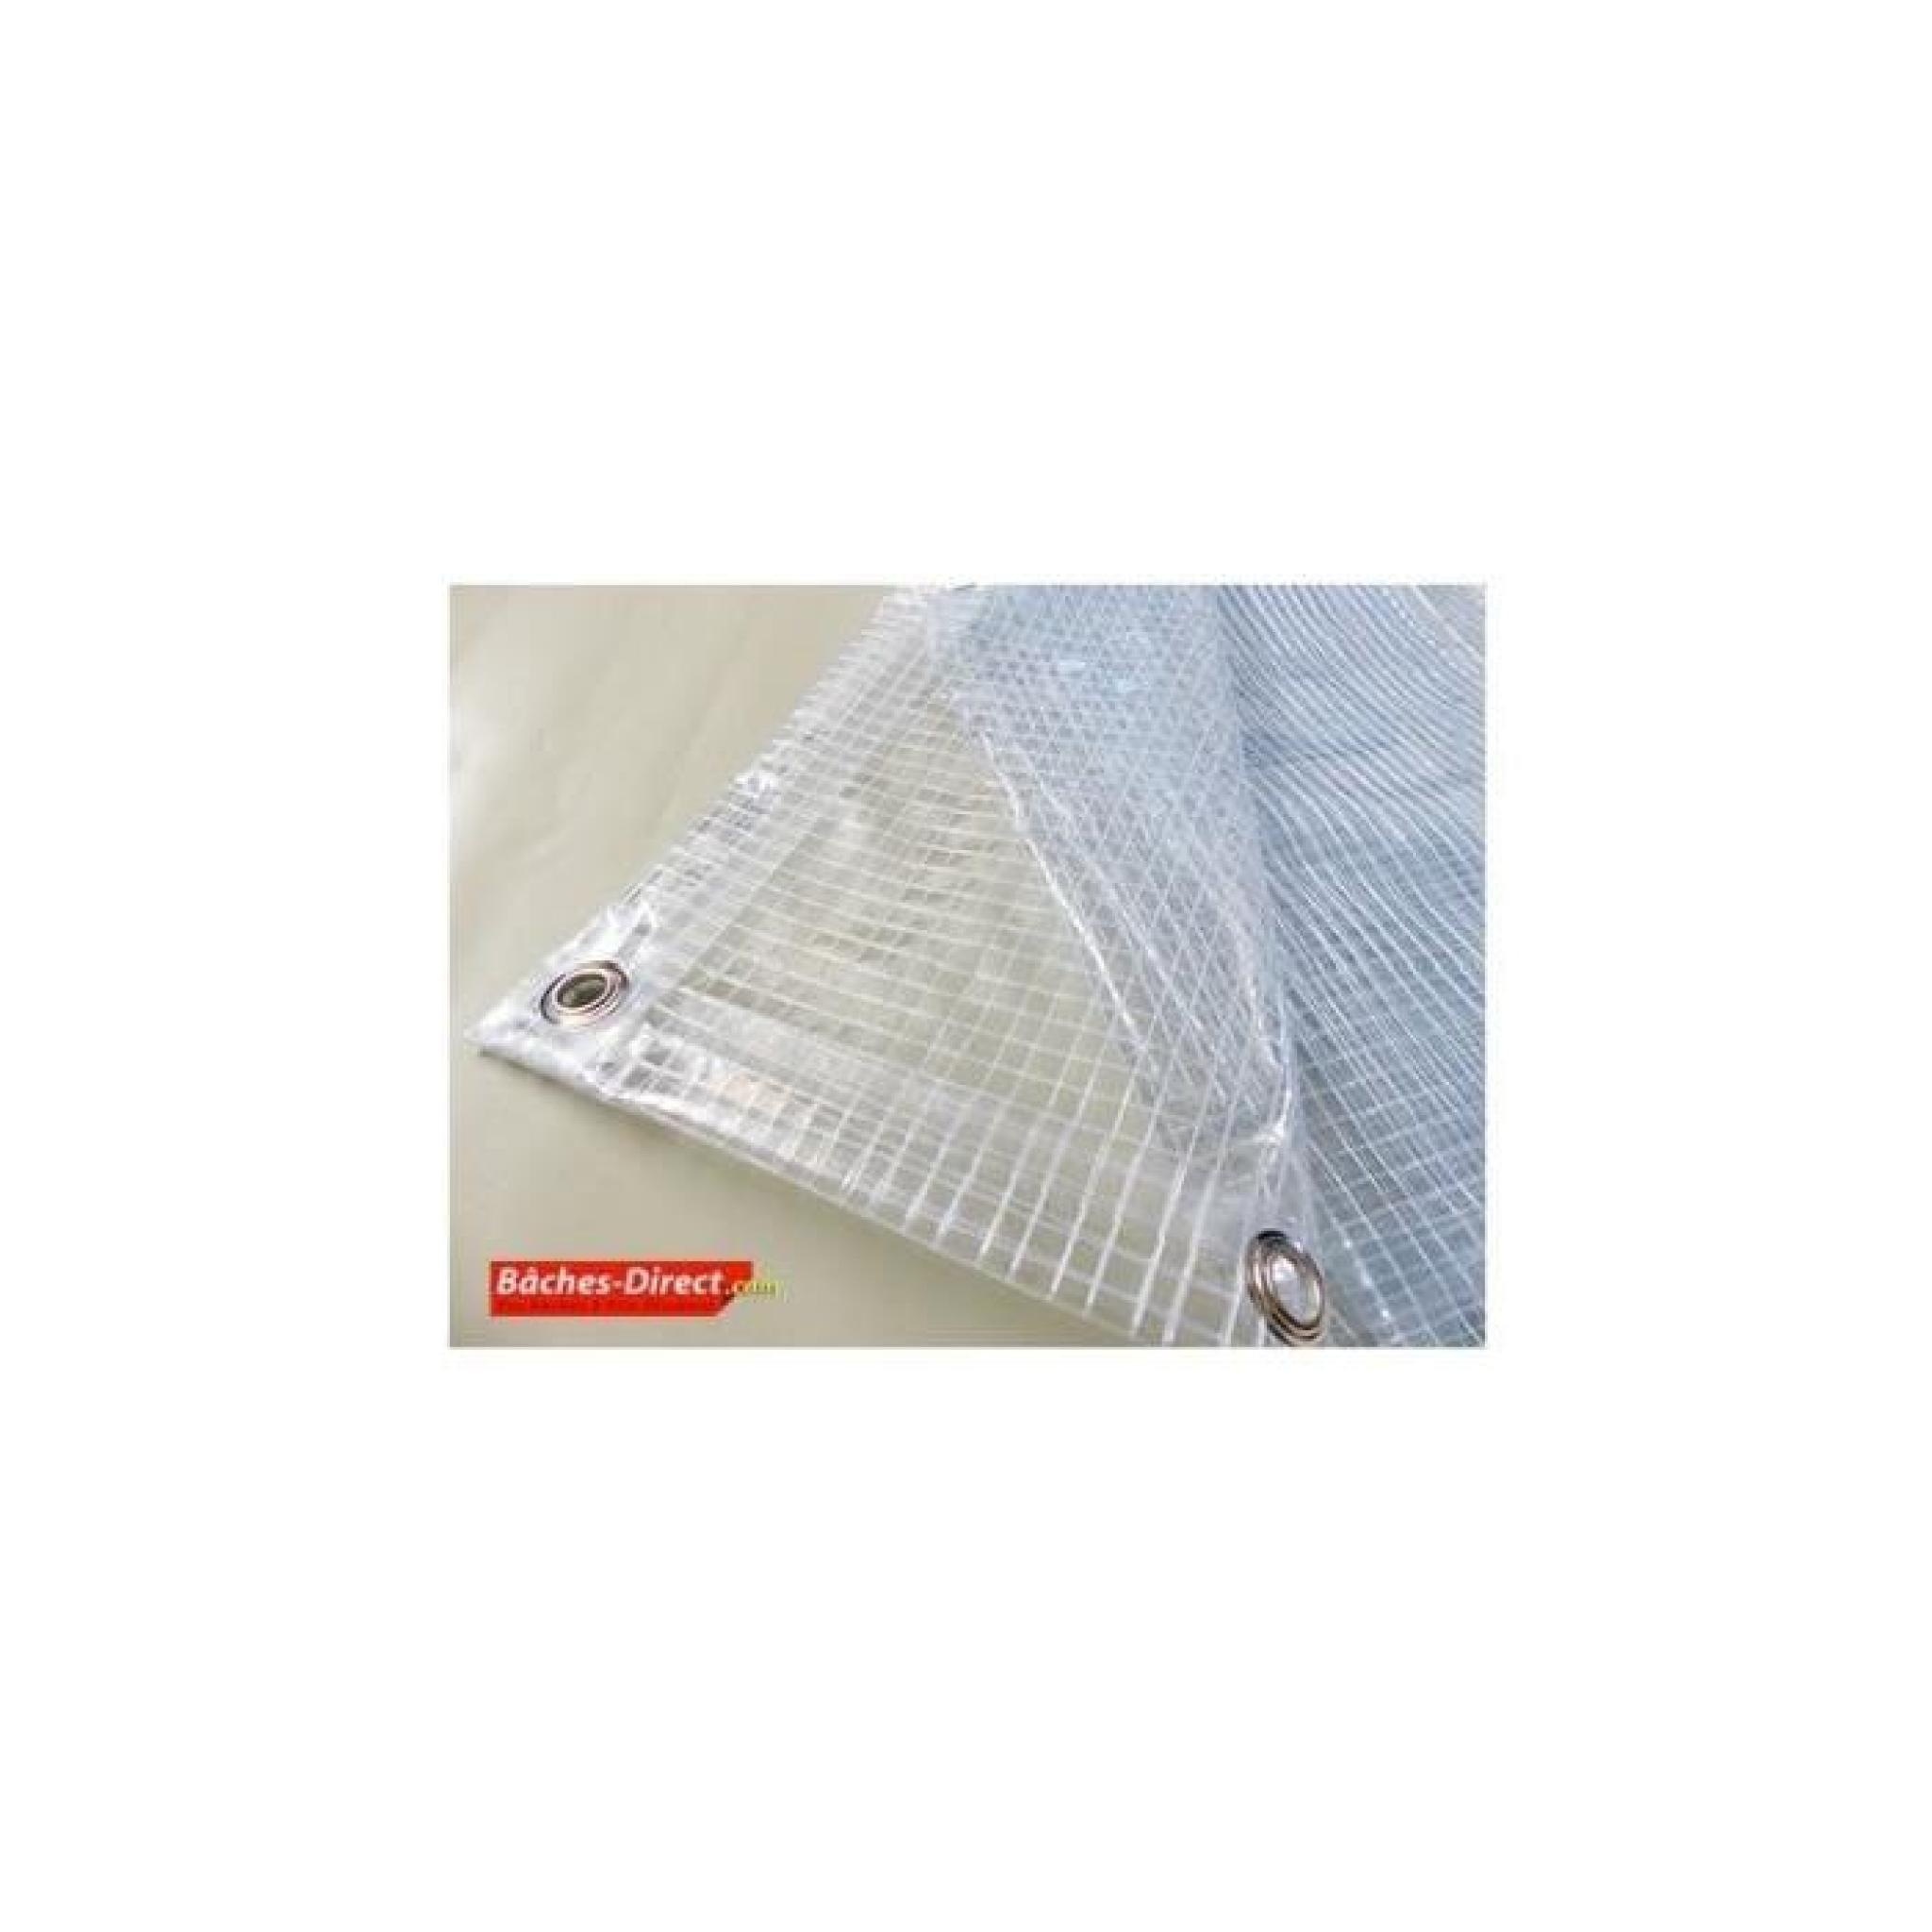 BACHES DIRECT - Bâche Pergola 400 g/m² - 3.8 x 6 m - bache transparente pour toile de pergola - bache imperméable Transparente Armée